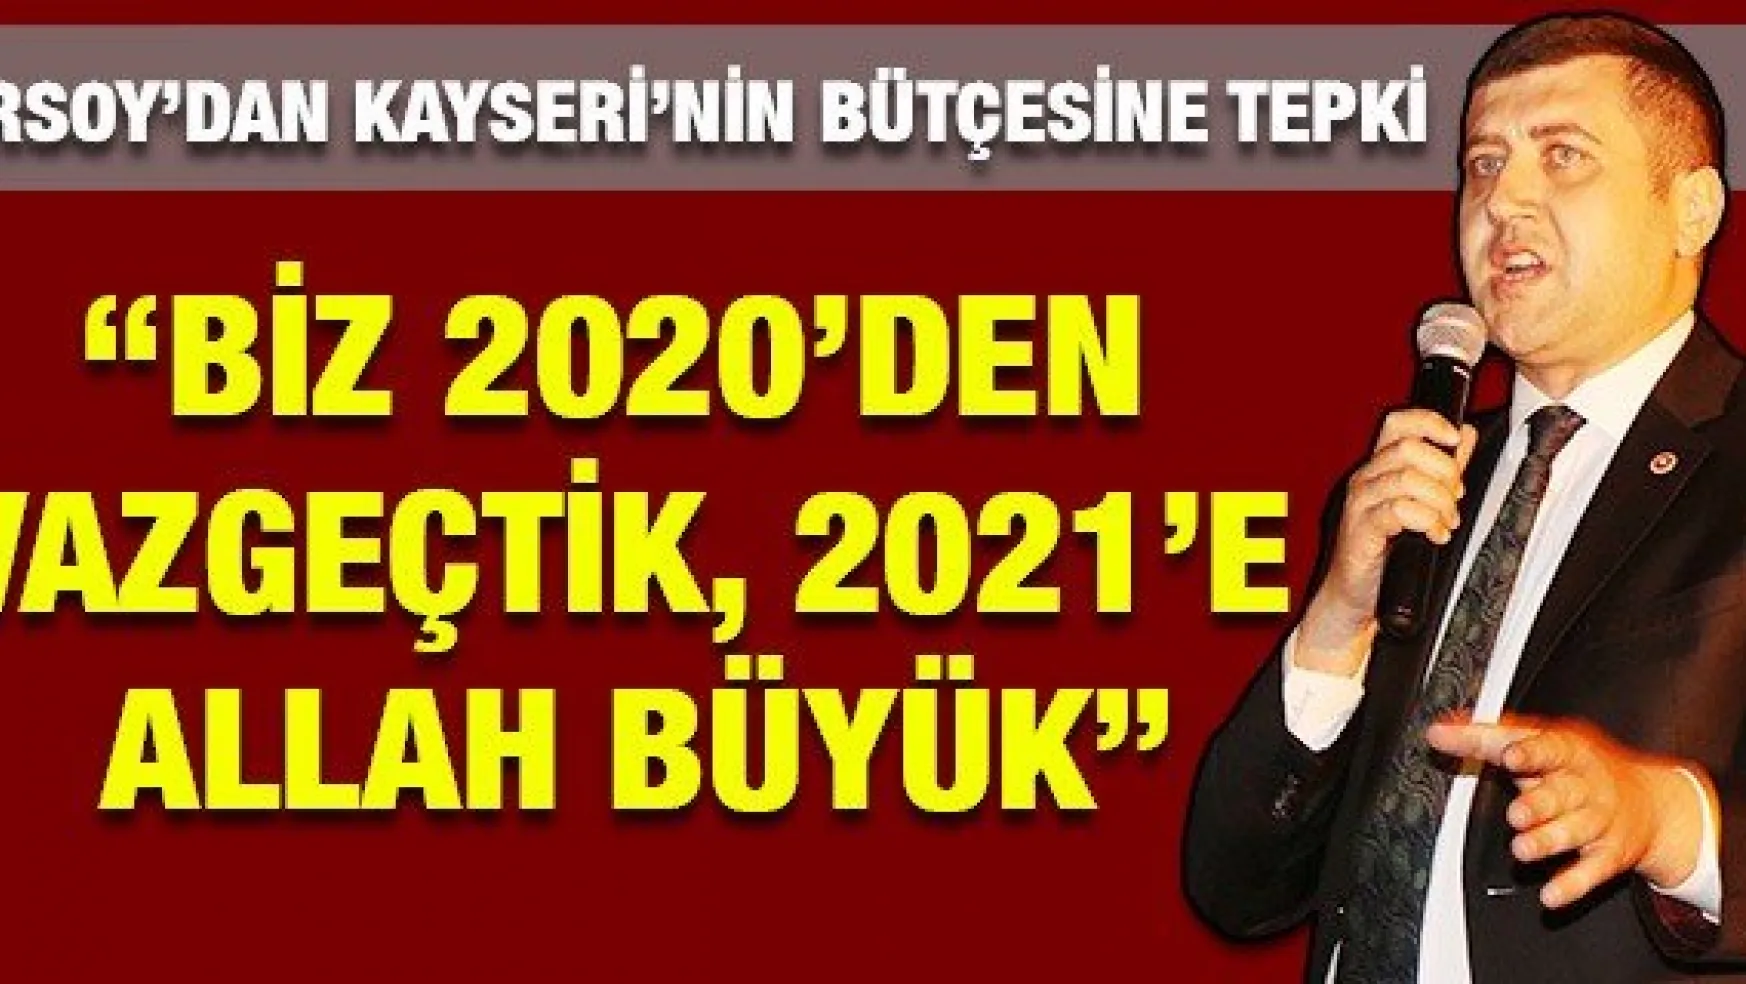 'BİZ 2020'DEN VAZGEÇTİK, 2021'E ALLAH BÜYÜK'